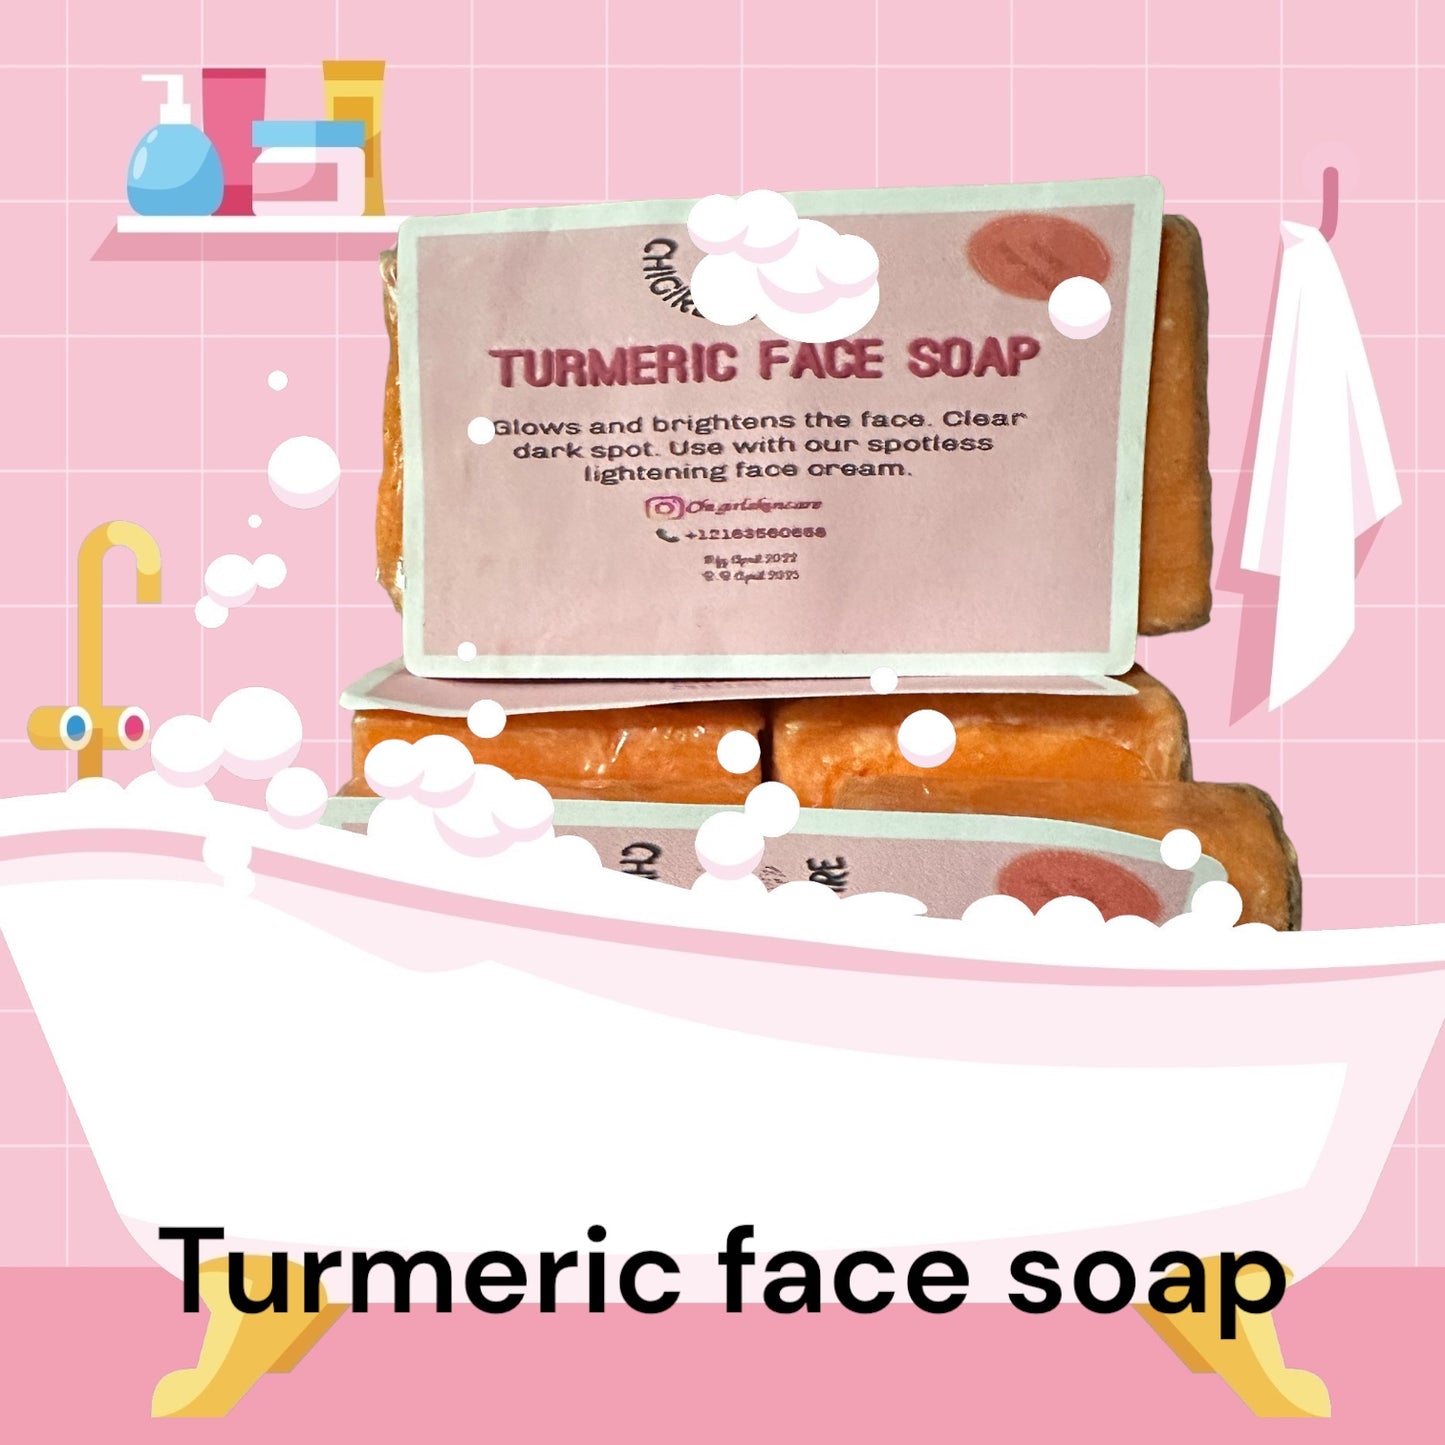 Turmeric face soap